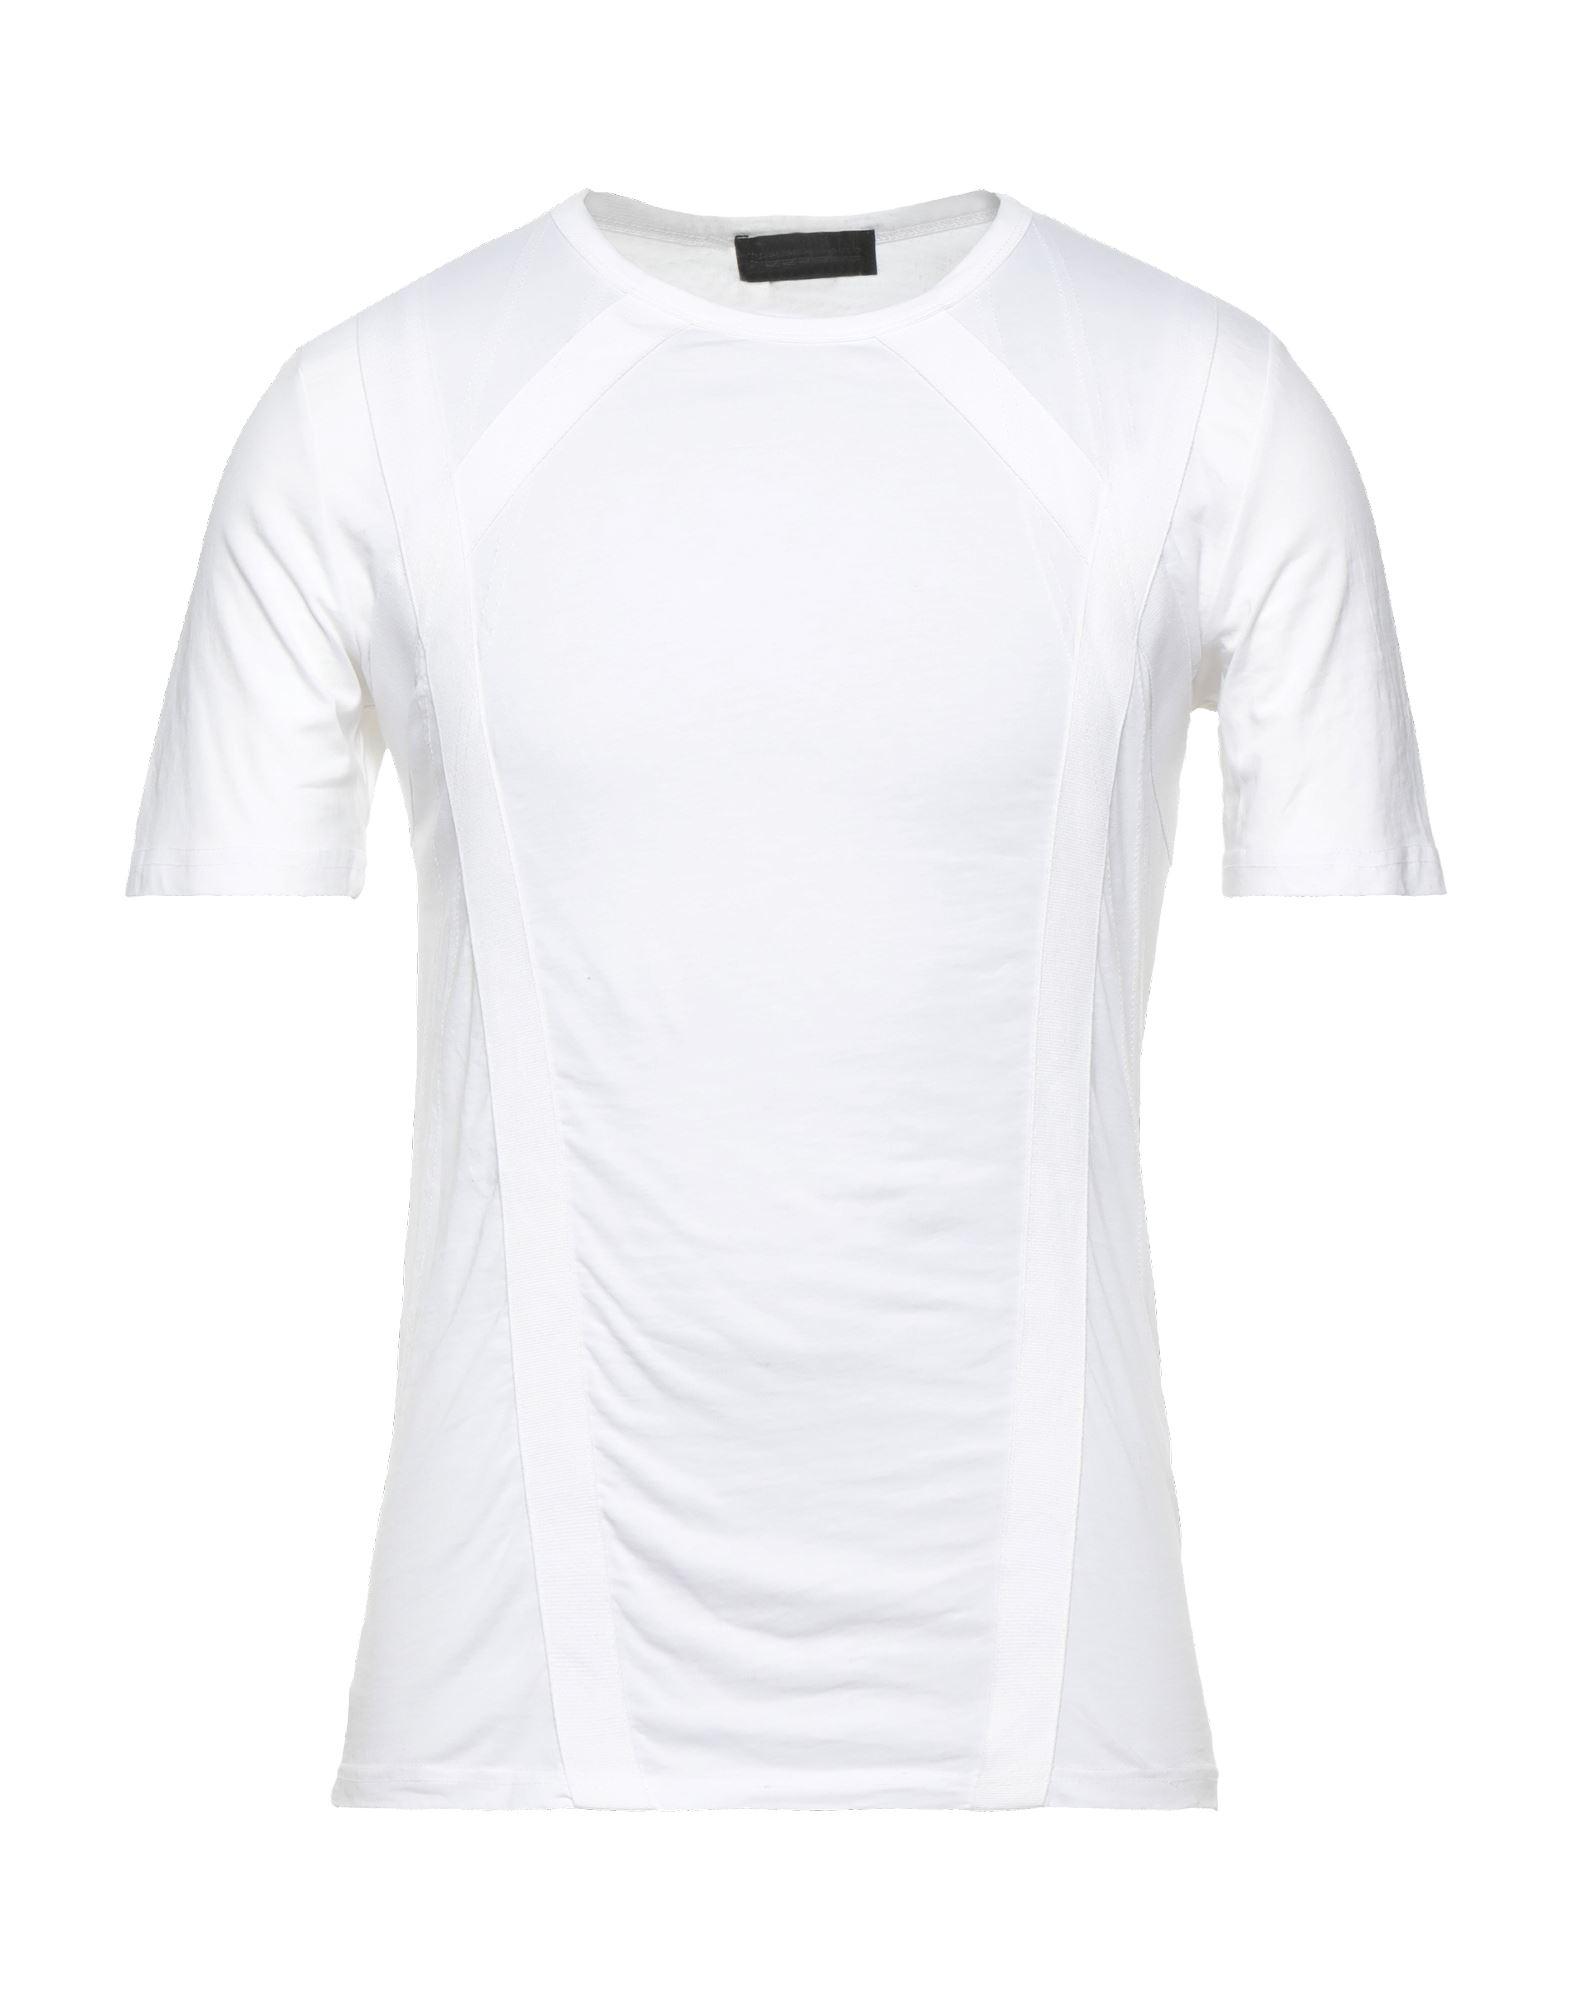 Diesel Black Gold T-shirt in White for Men | Lyst